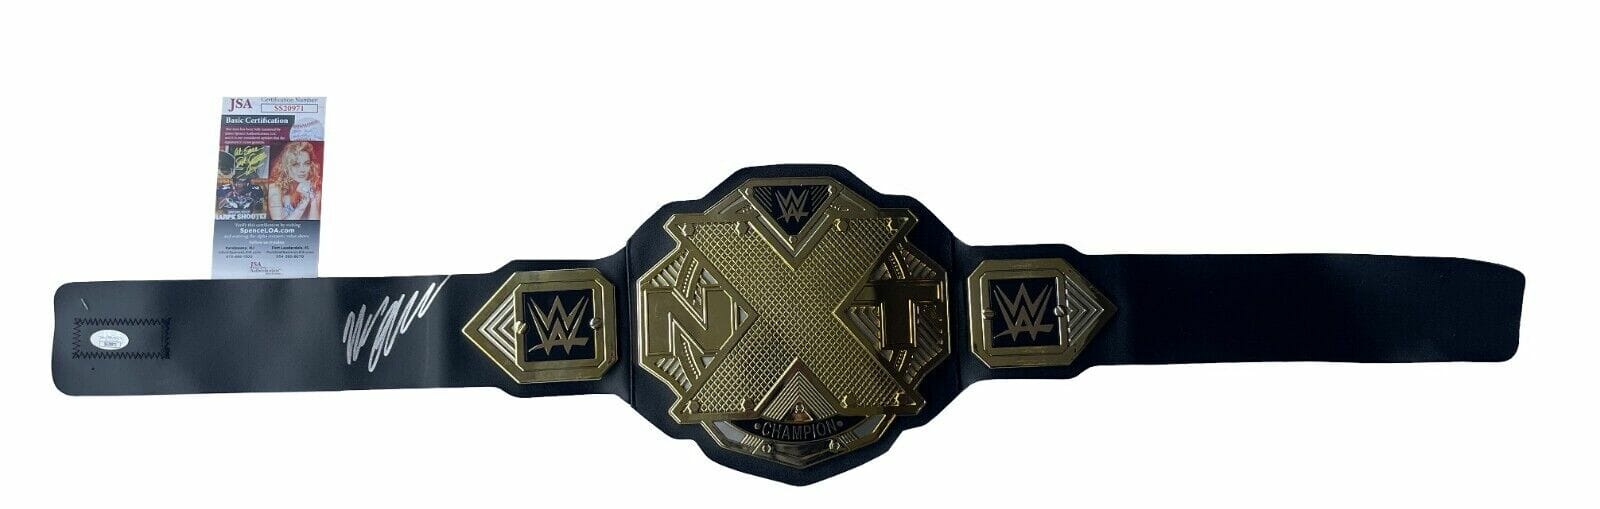 Bron Breakker Signed Wwe Nxt Championship Toy Belt Jsa Coa Opens In A